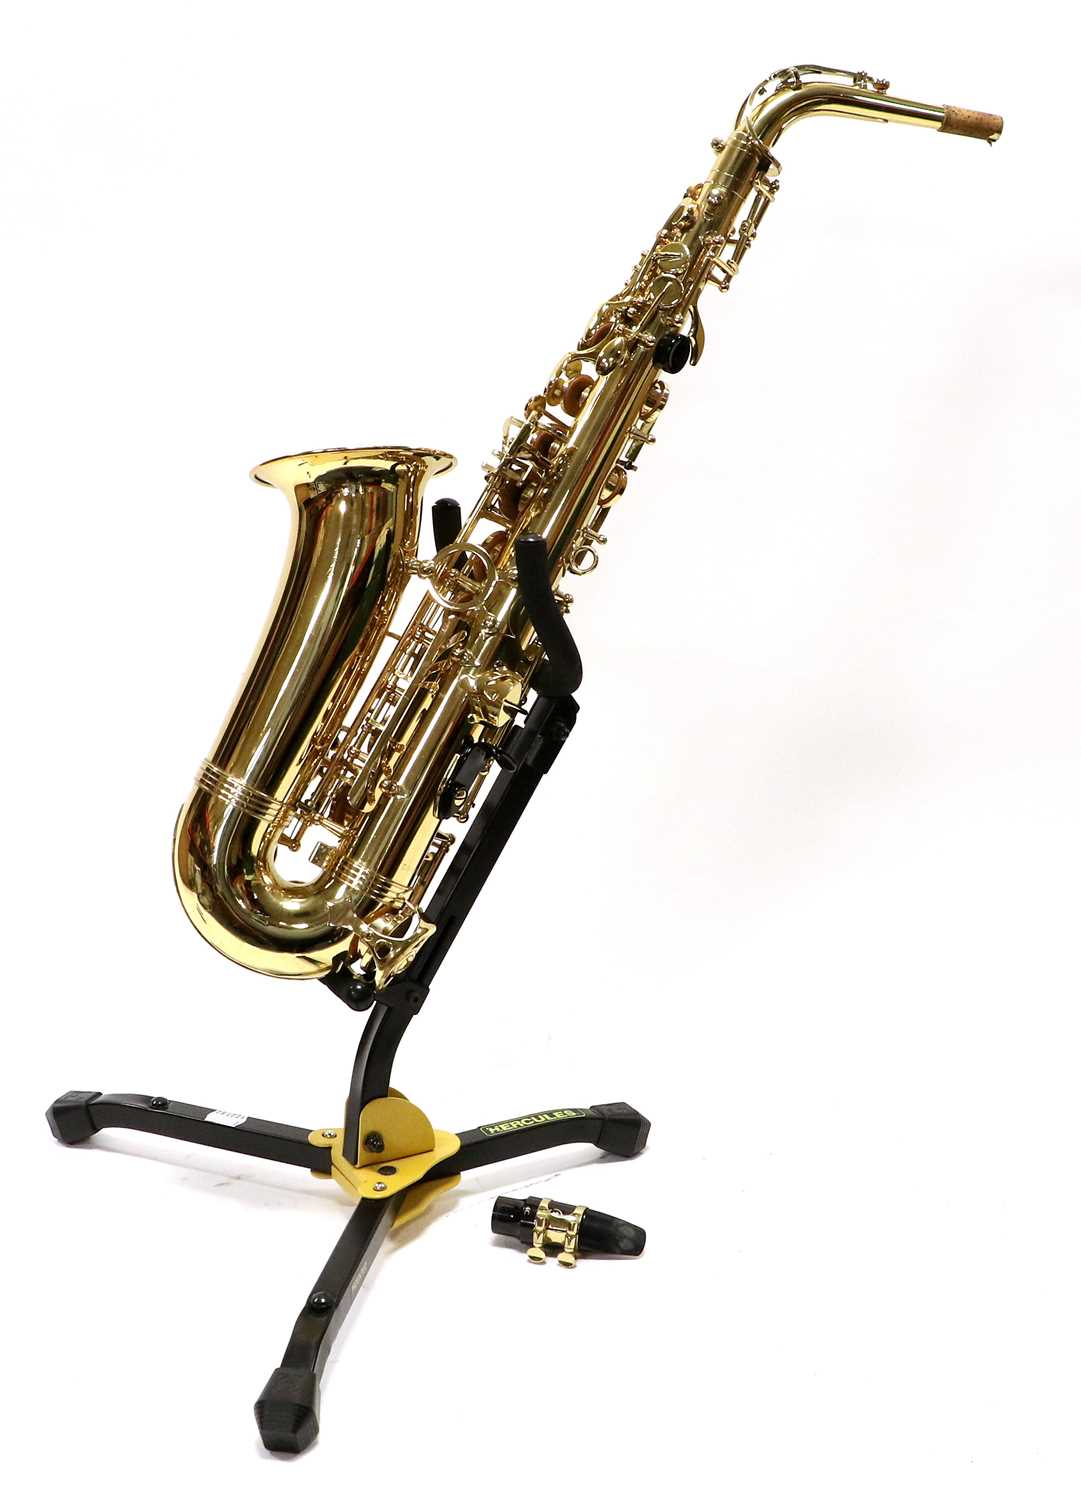 Lot 38 - TJJ The Horn Alto Saxophone